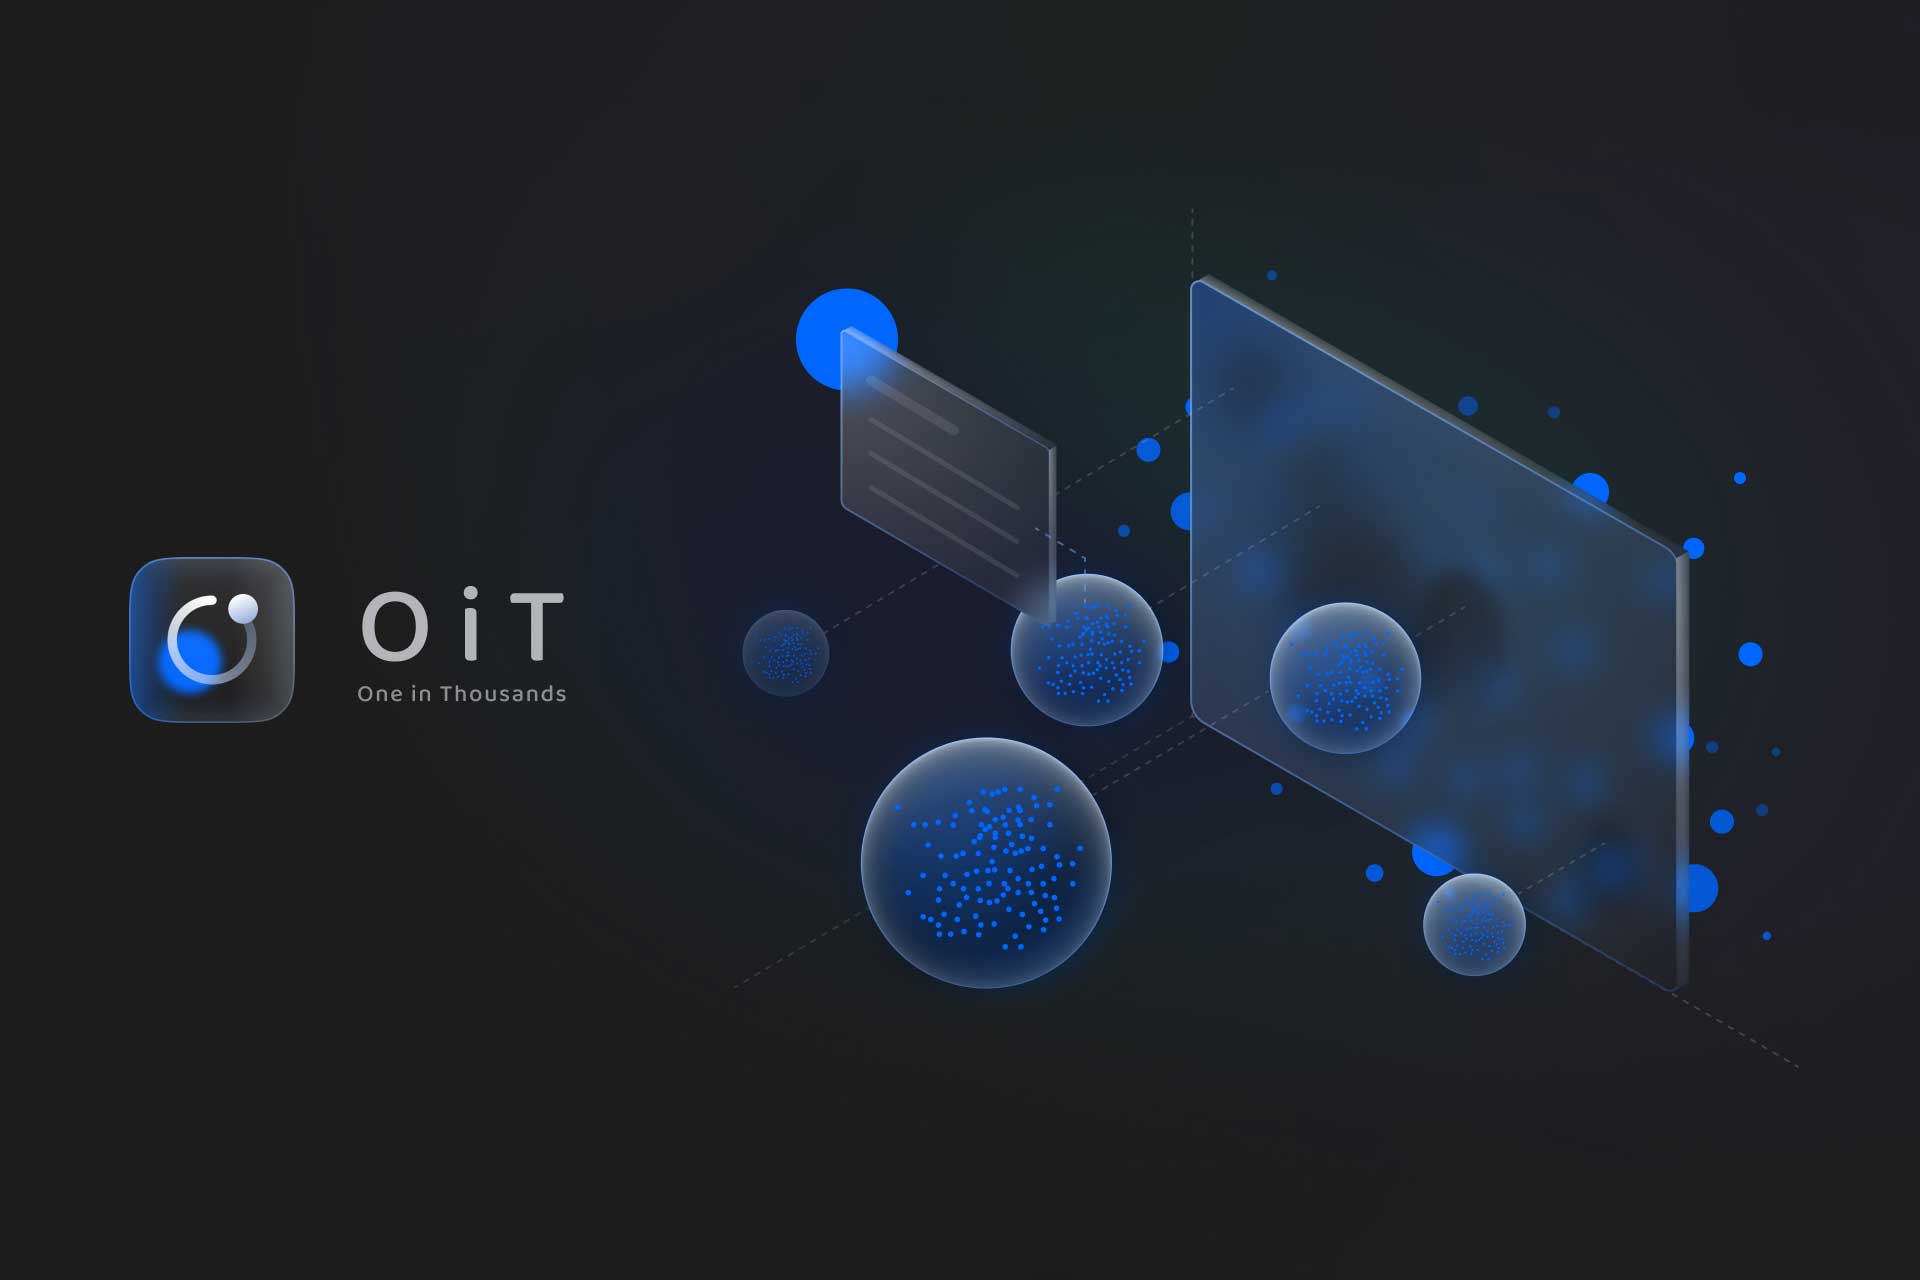 OiT - One in Thousands | Yunsheng Zhou